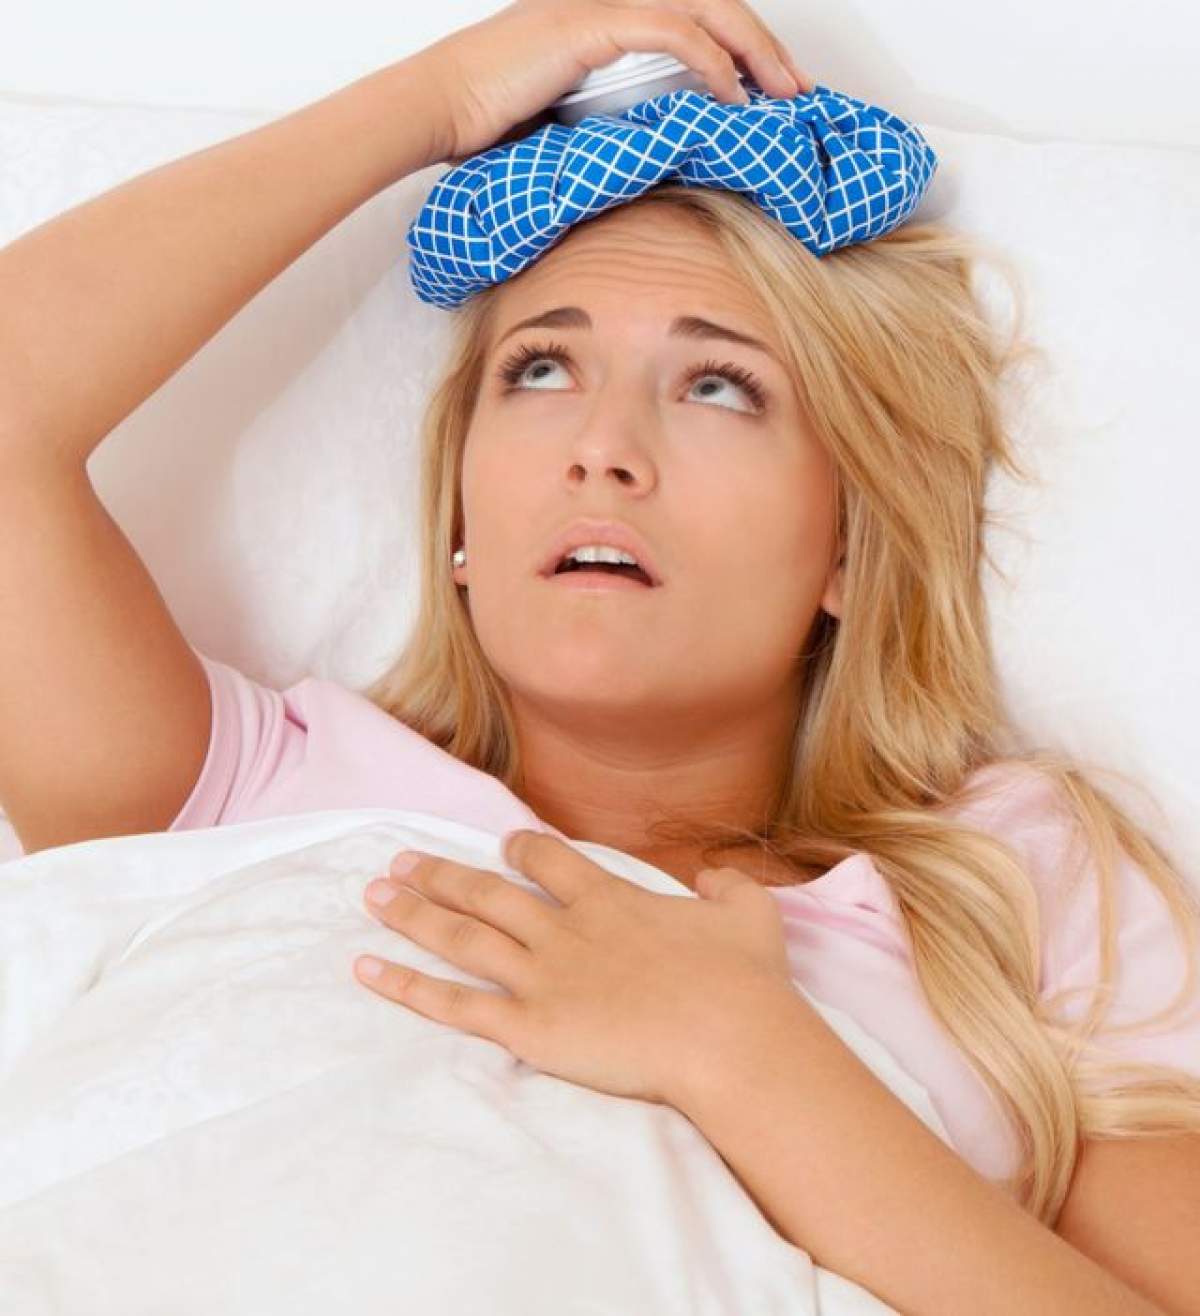 Sfaturi pentru un somn mai uşor când eşti bolnavă